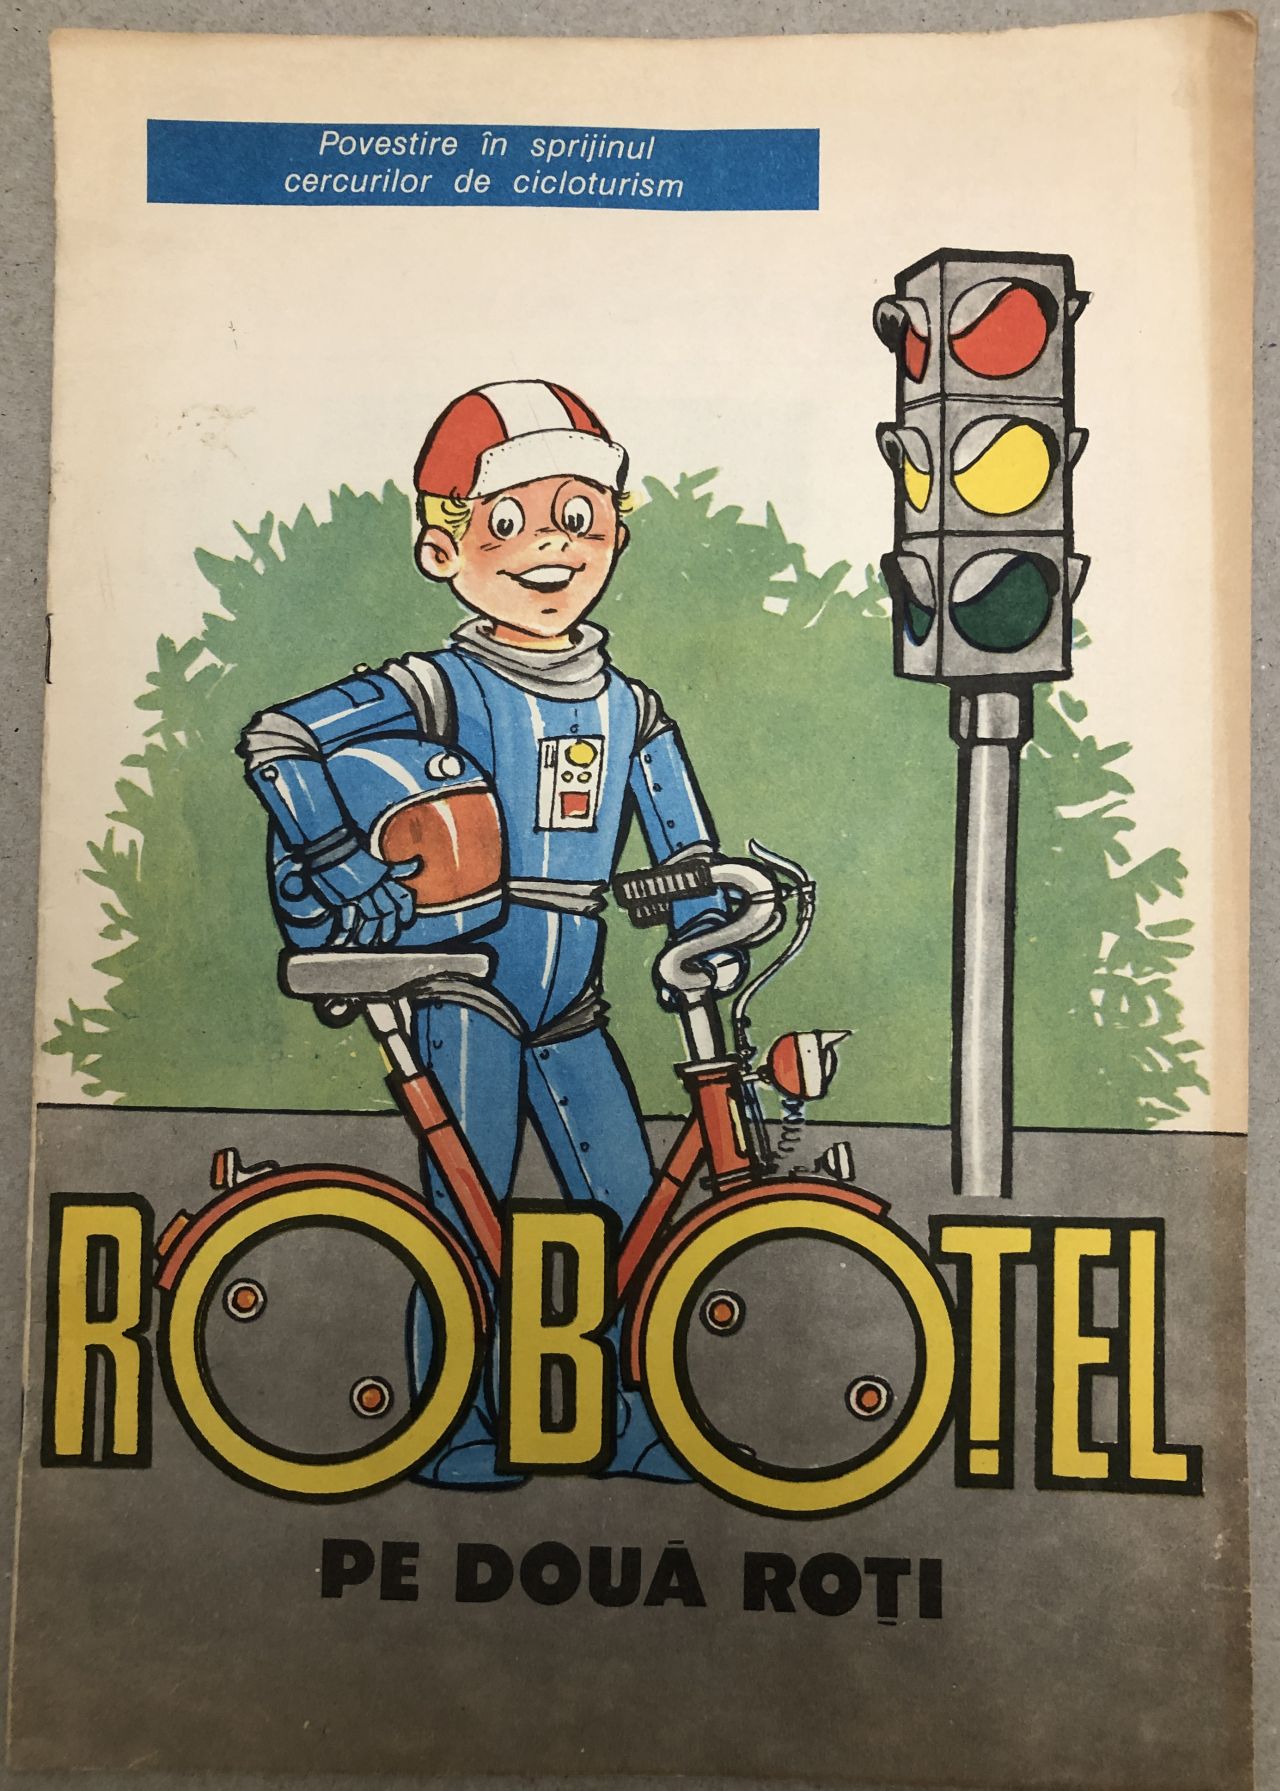 Strength rotary crew Robotel pe doua roti, revista-poveste editata de ACR pentru cluburile de  cicloturism, ilustratii Puiu Manu, anii 80 (cc22) – kolectionarul.ro